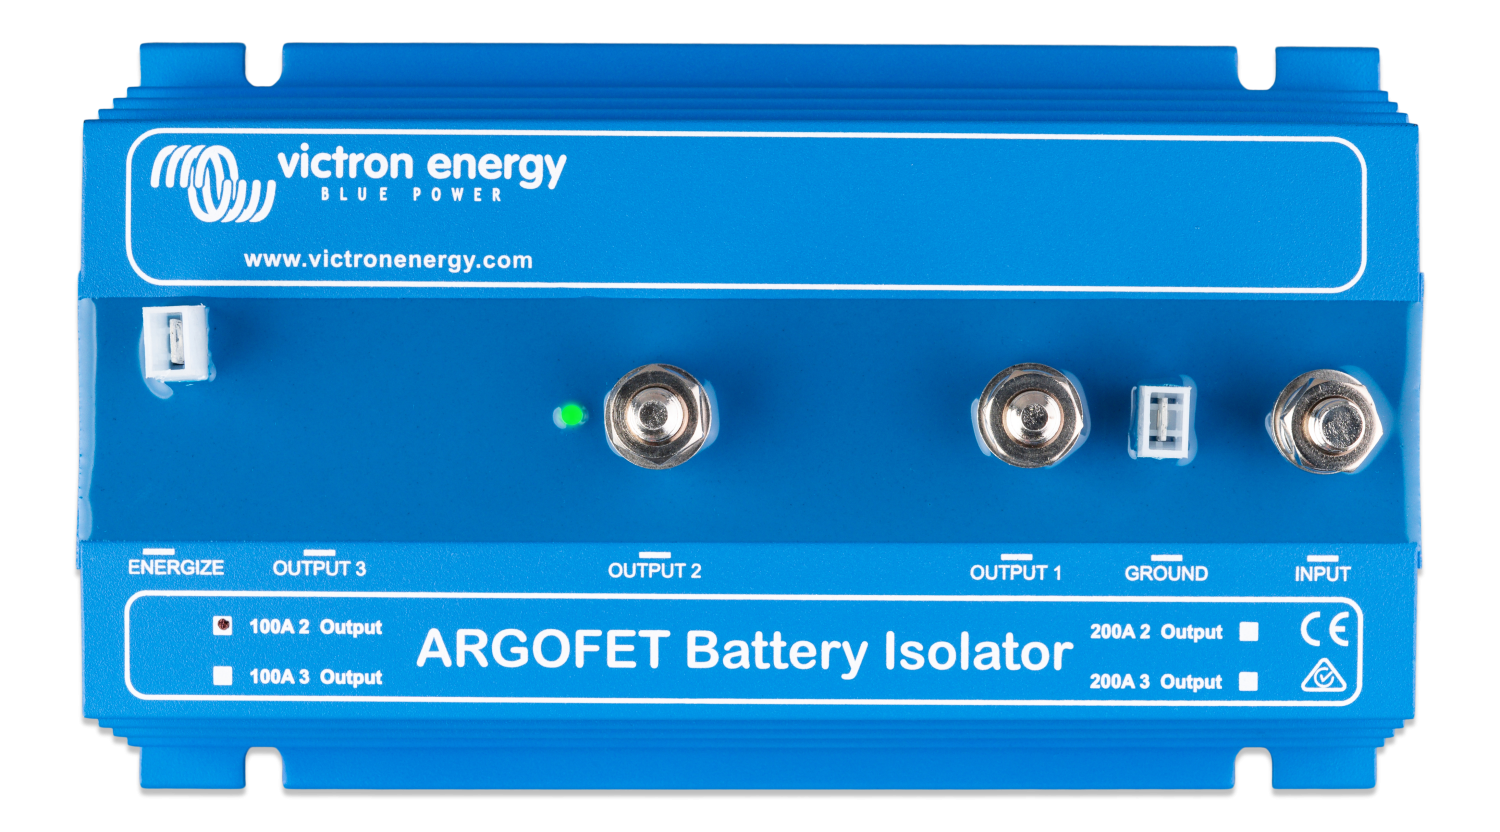 laadstroomverdeler-100-2-2-batteries-100-ah-argofet100-2